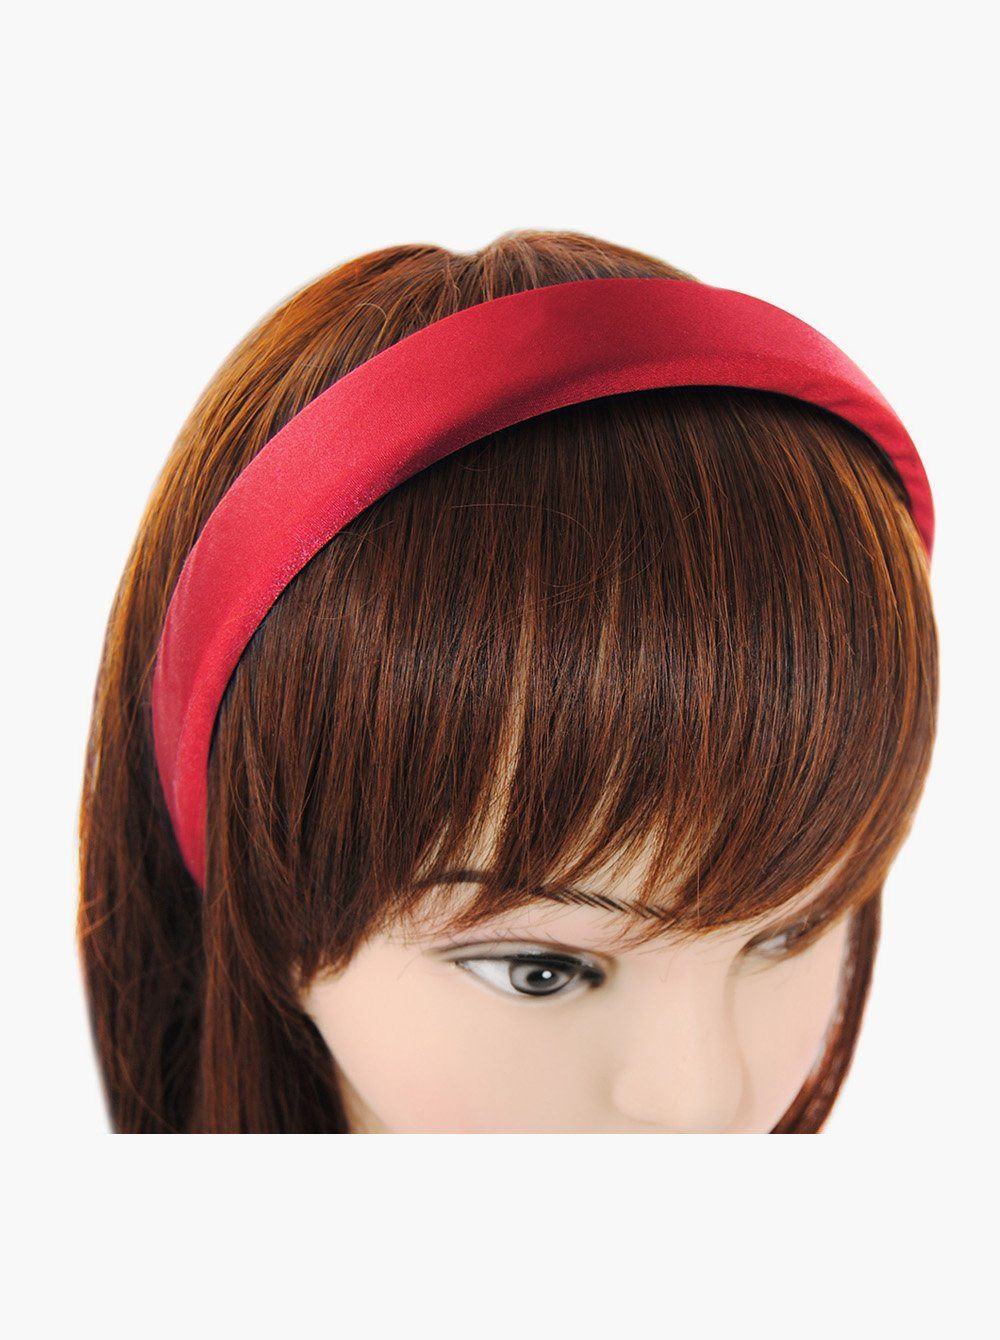 axy Haarreif Haarreif mit Stoff Vintage Damen Bezogen Satin gepolstertes Haarband Rot Colours, Haareifen Candy